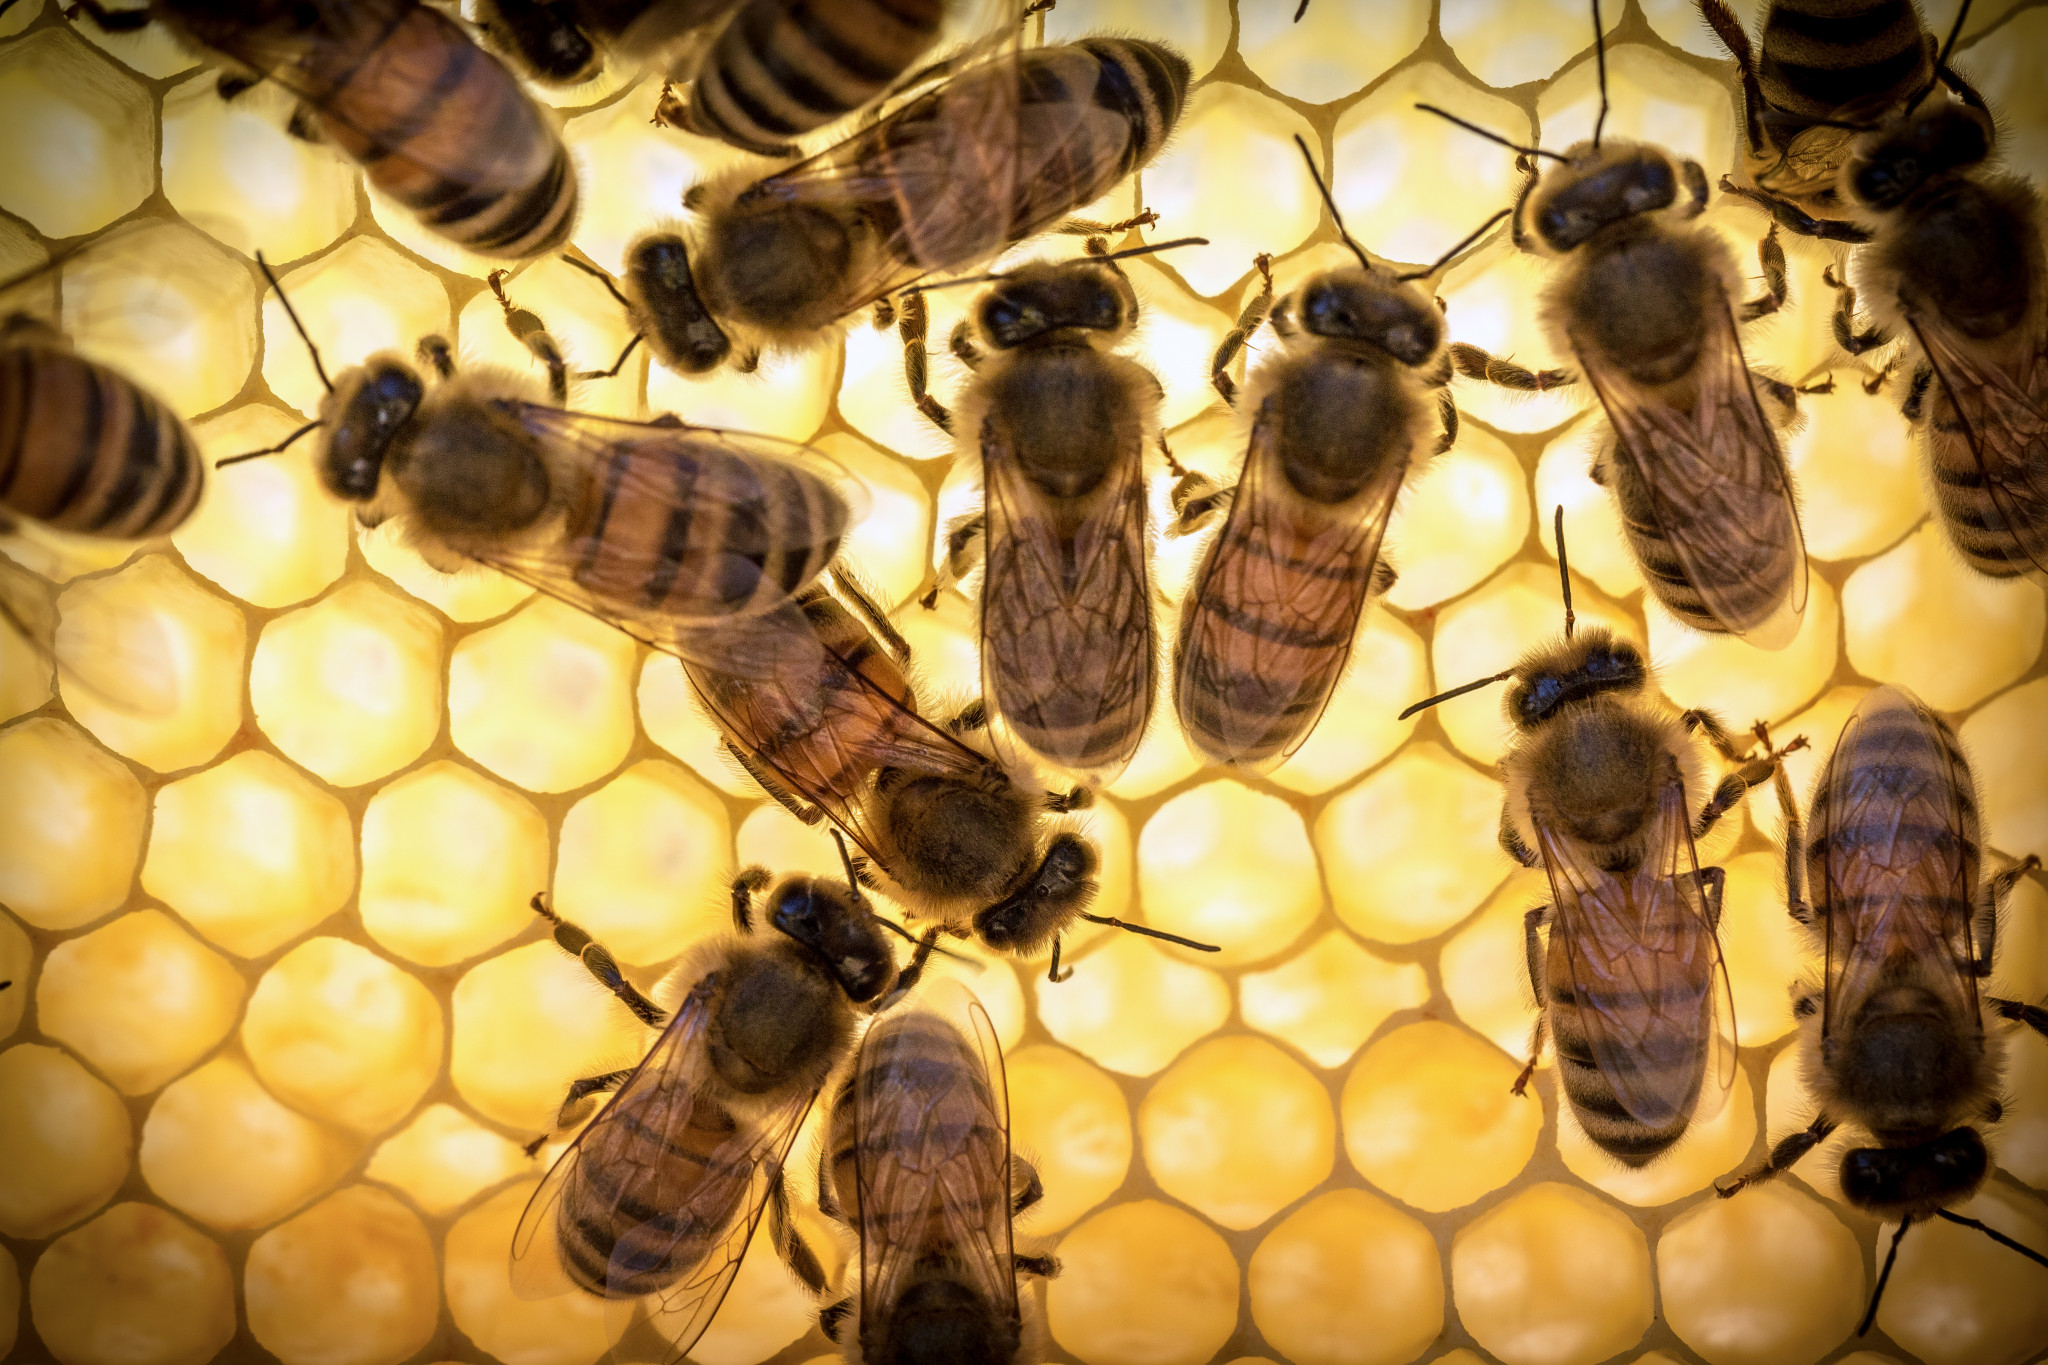 La pappa reale d'api non è raccomandata per l'uso notturno, poiché sotto la sua influenza aumenta l'attività nervosa e l'insonnia possibile